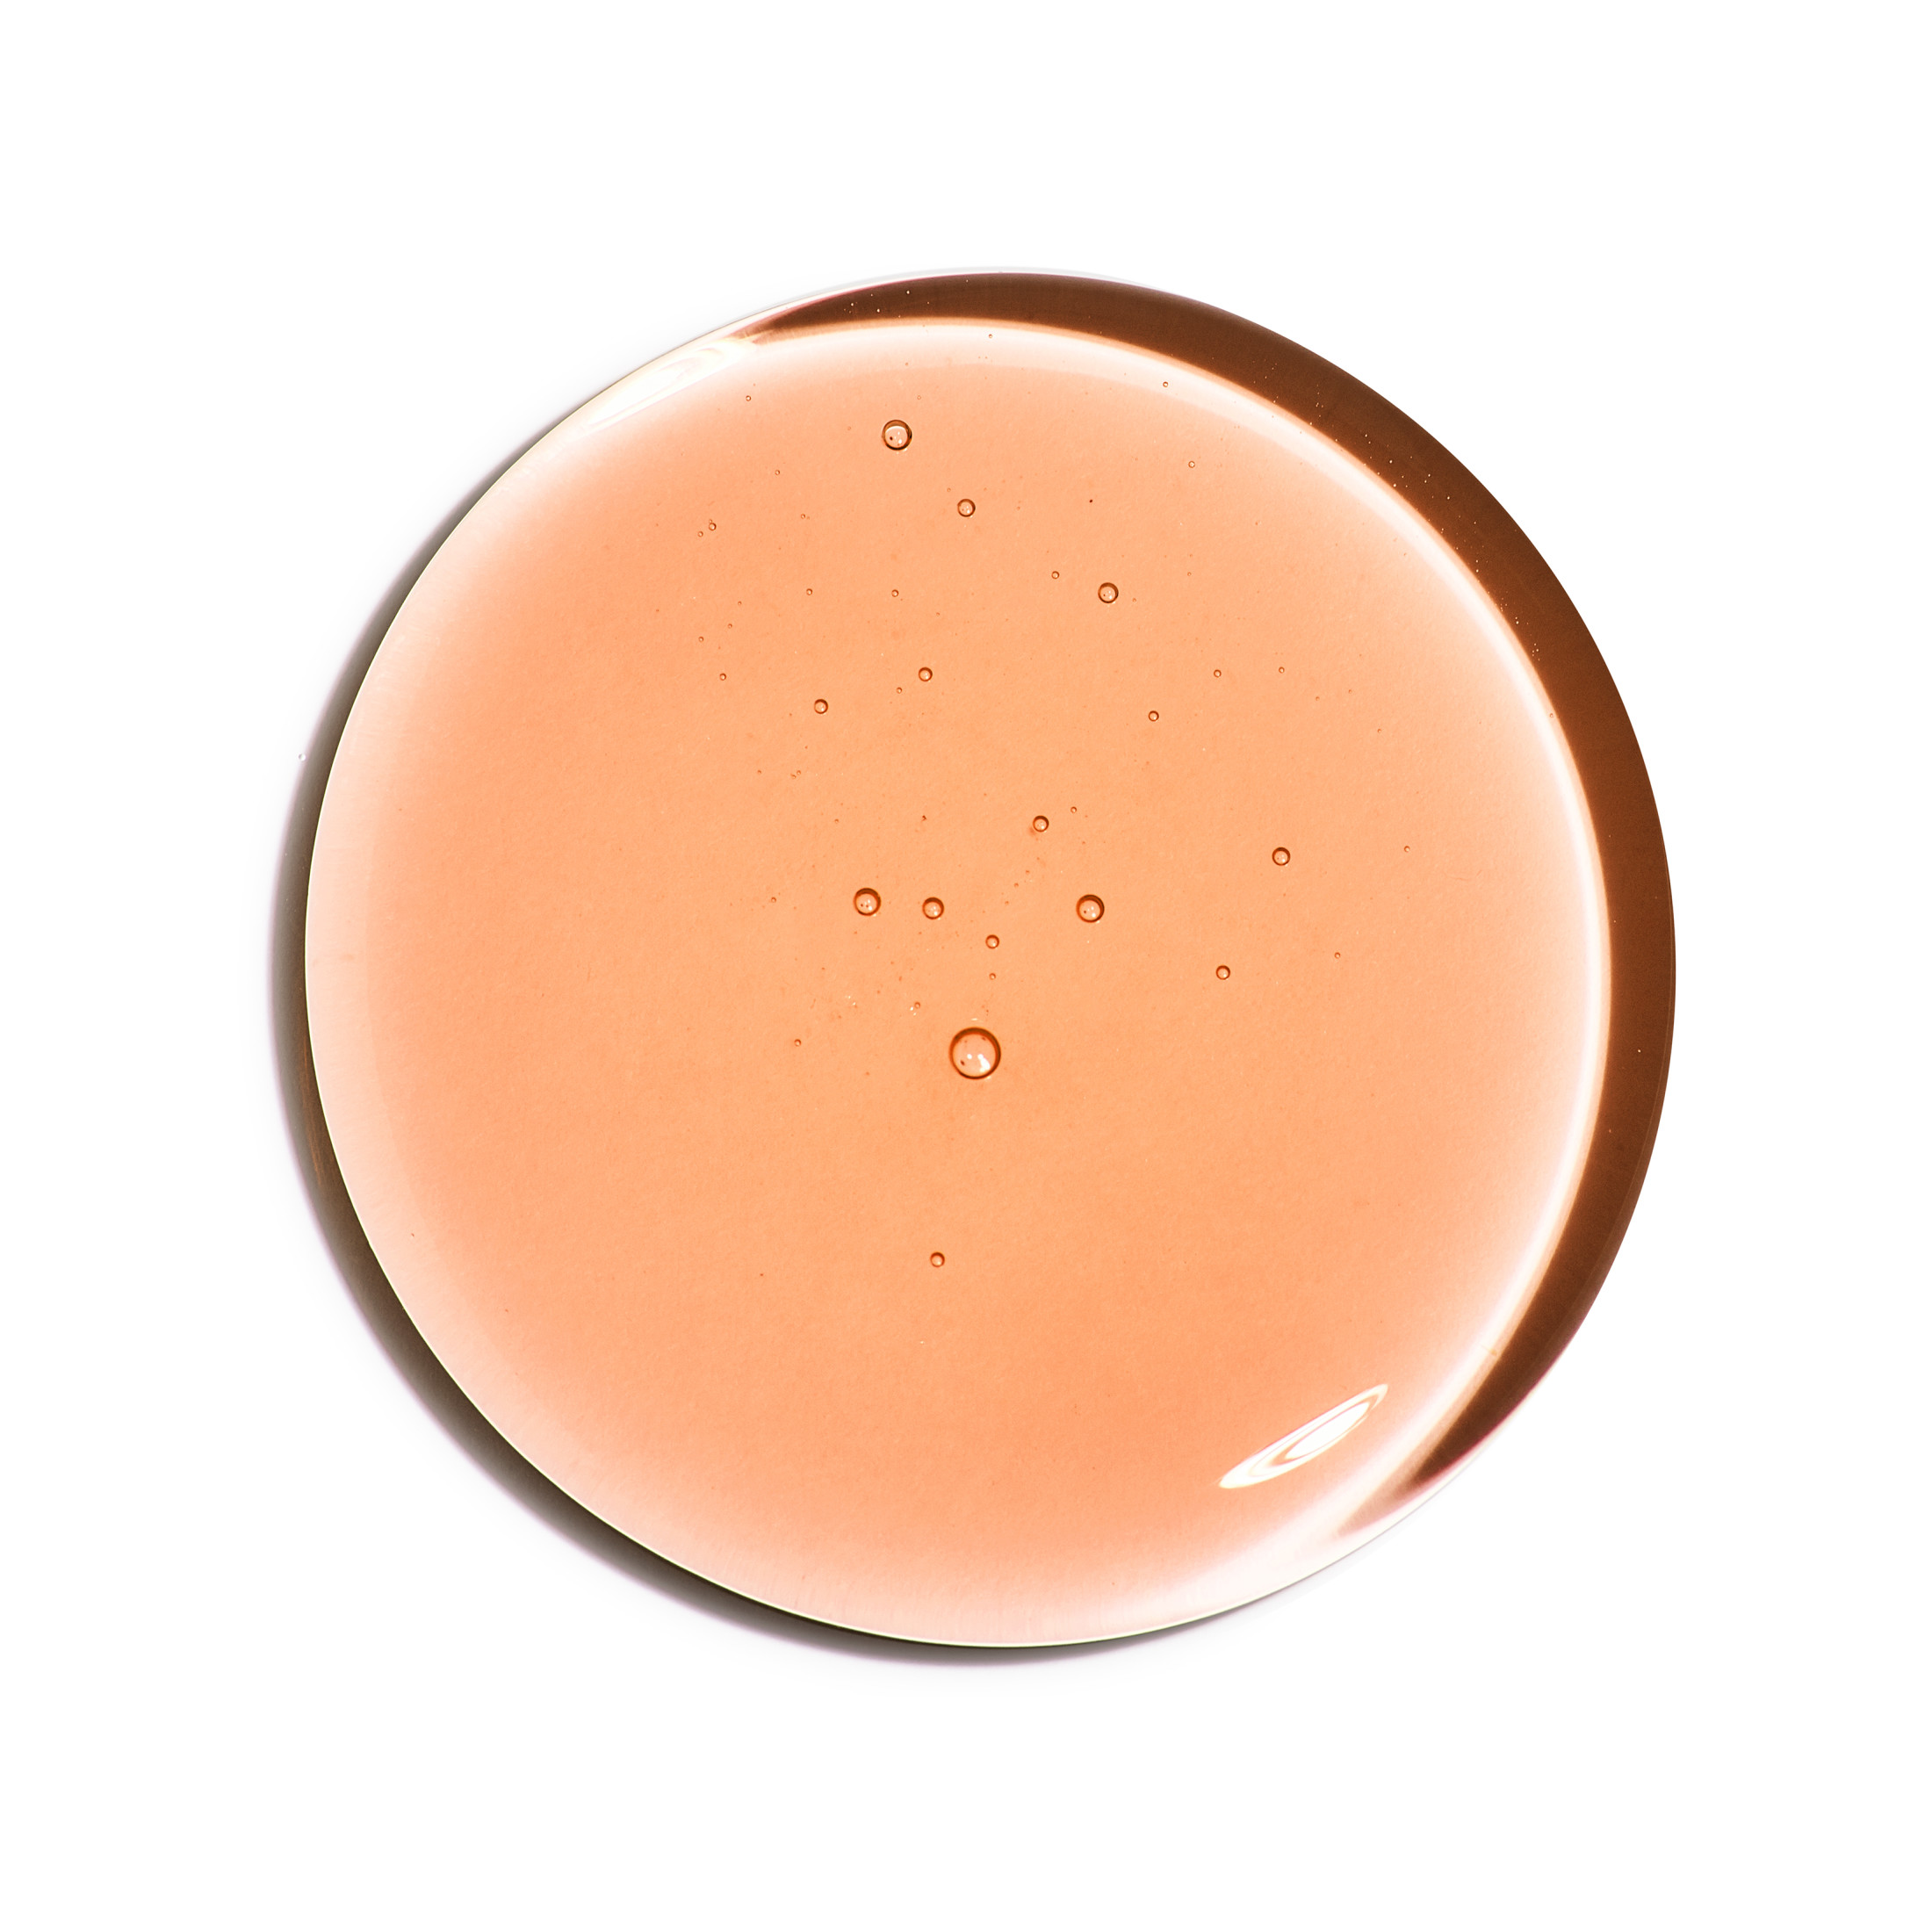 Neutrogena Body Clear Acne Body Wash, 2% Salicylic Acid, 8.5 fl. oz - image 5 of 8